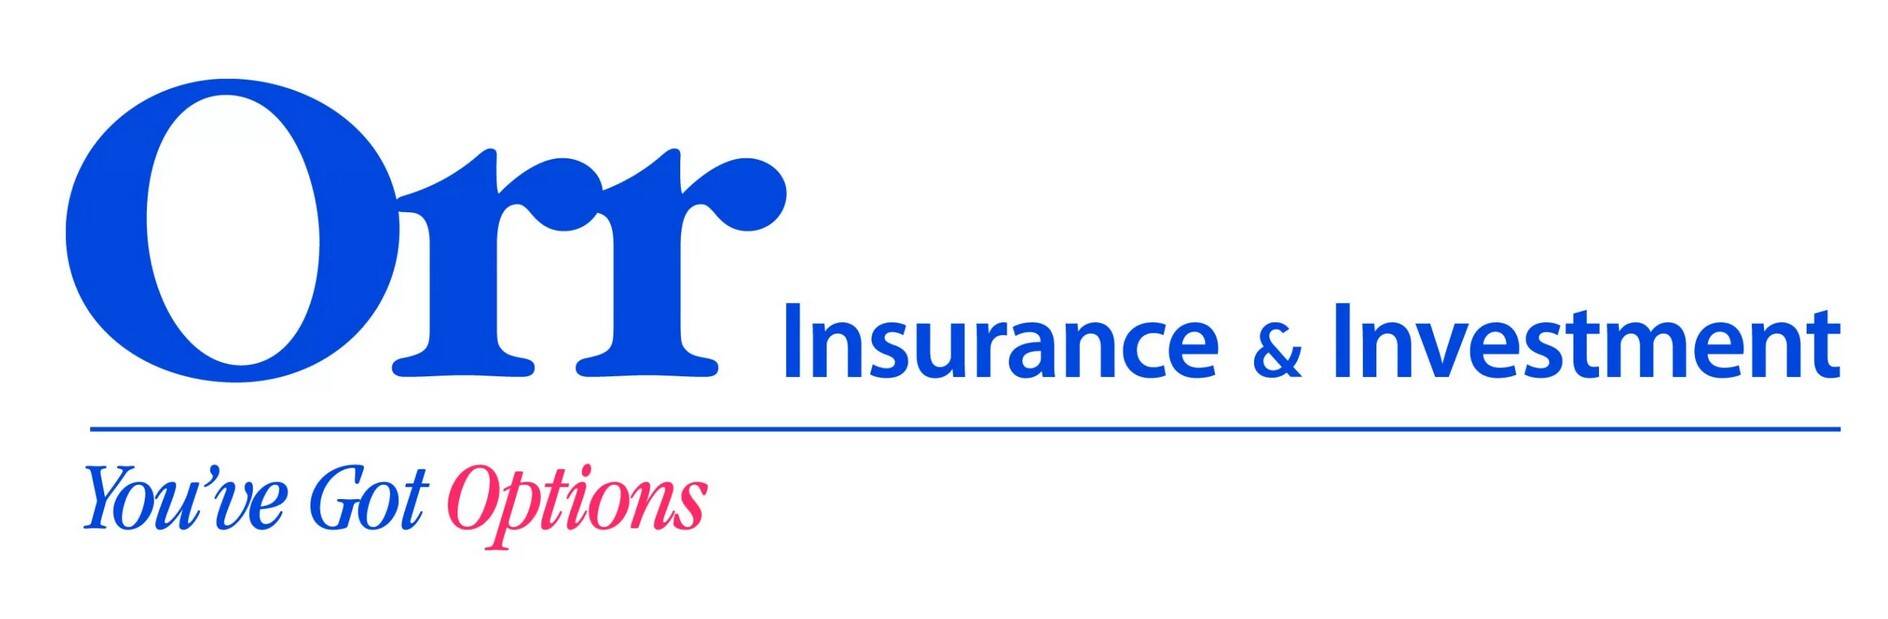 Orr Insurance 